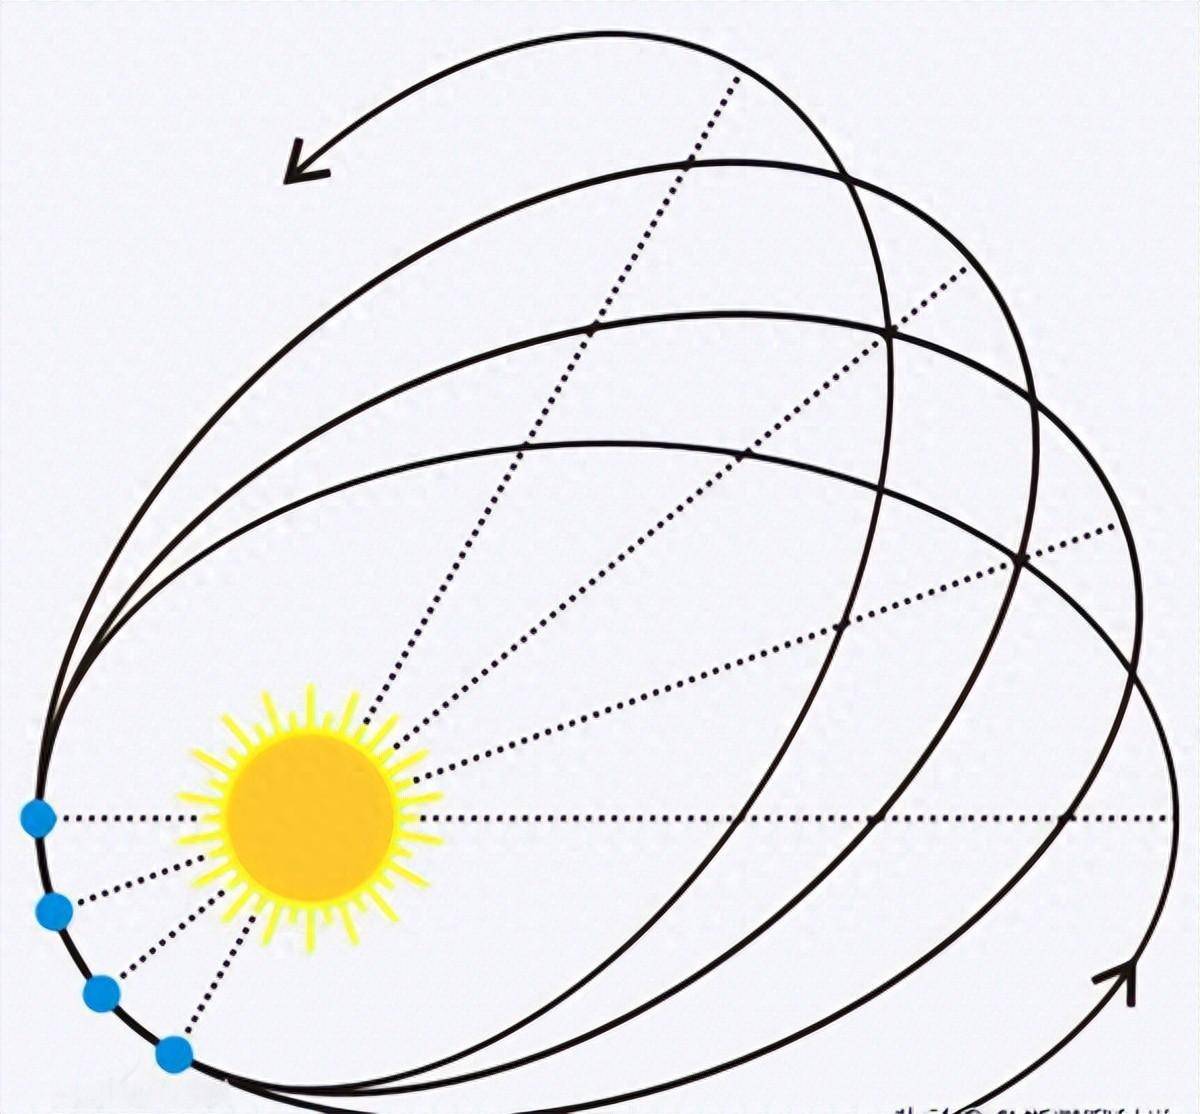 地球靠近太阳500万公里,公转速度变快,地球发生了什么?